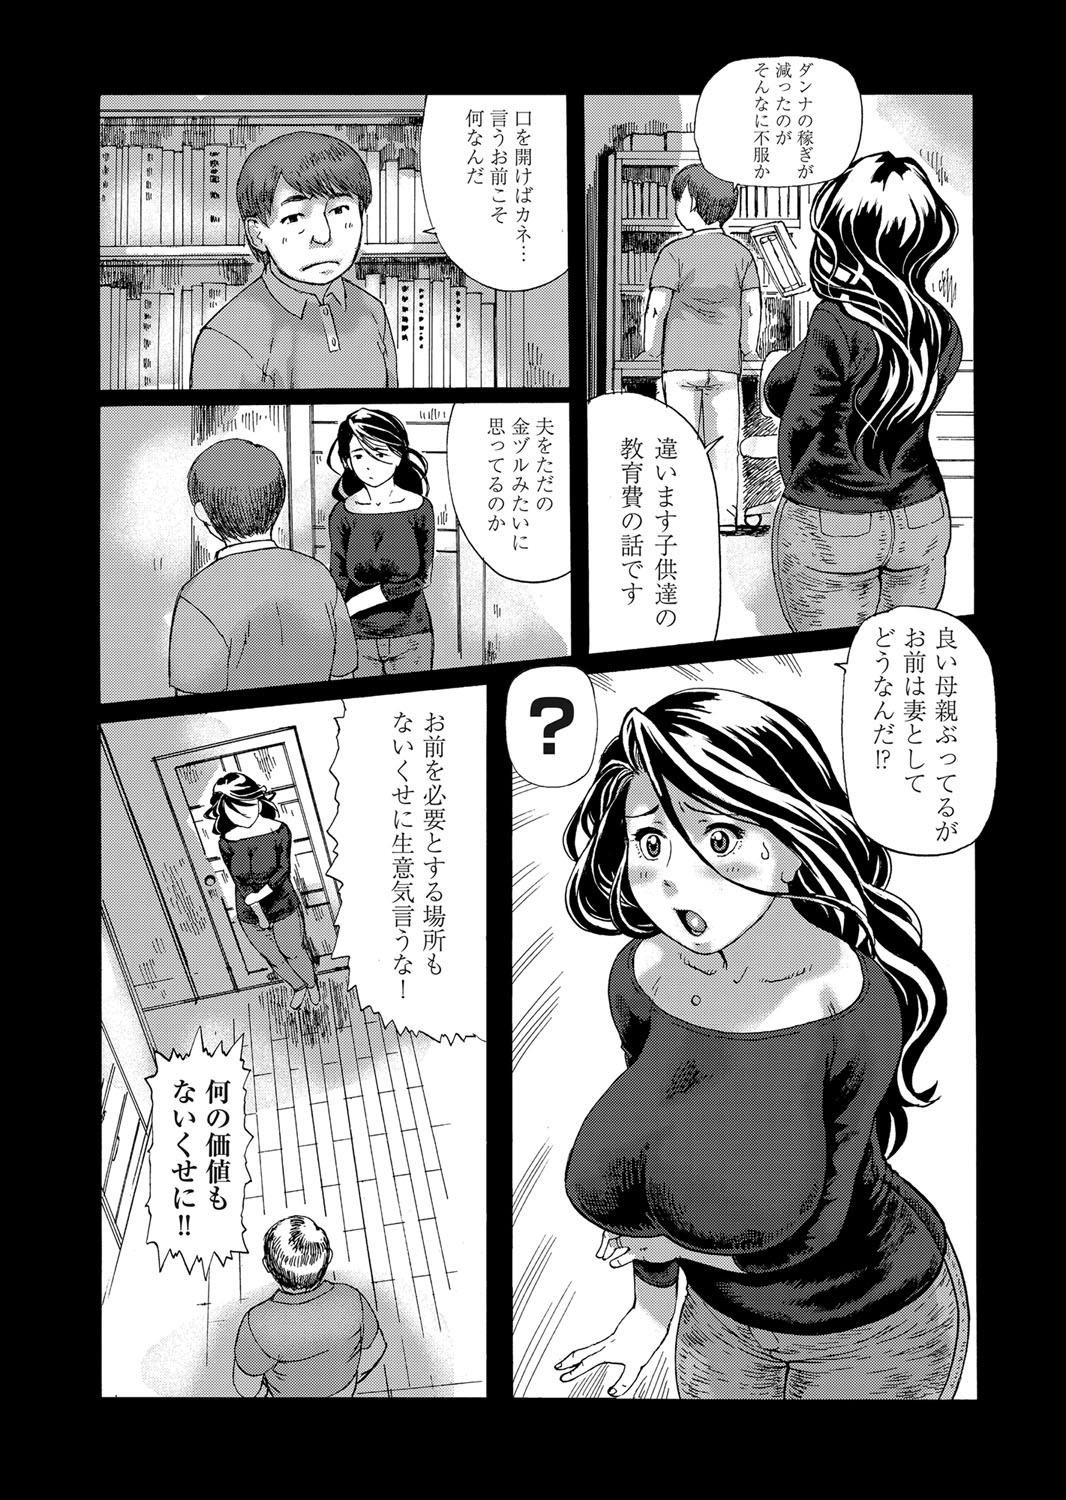 Chaturbate Hatsutori Oku-sama no Shiri Shojo Taiken Curves - Page 3